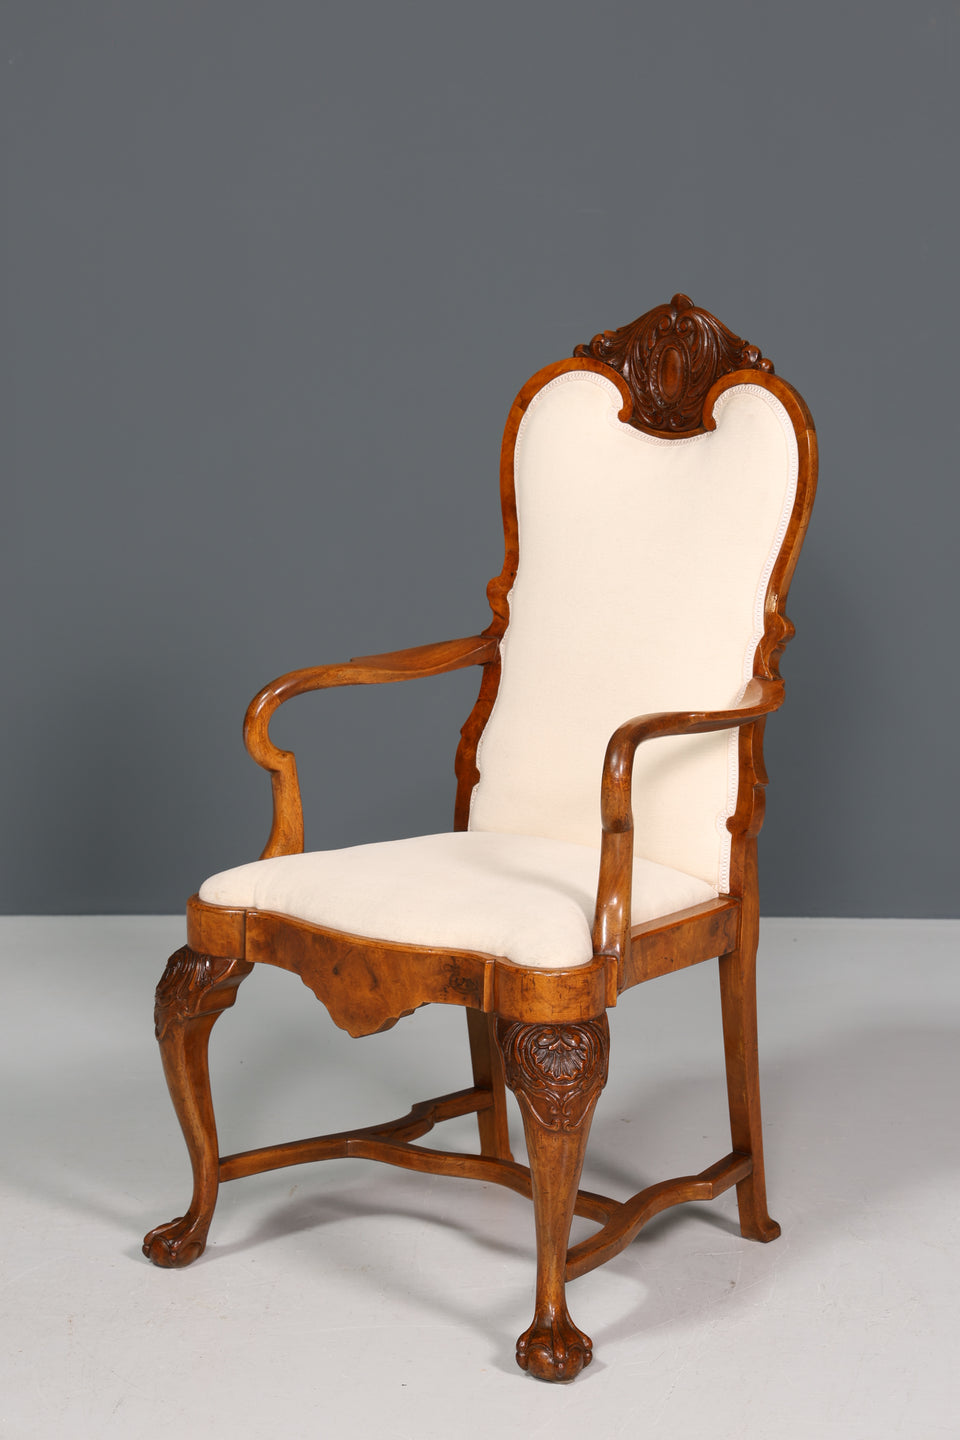 Traumhafter Louis Philippe Armlehnstuhl Antik massiv Holz Sekretär Stuhl Sessel